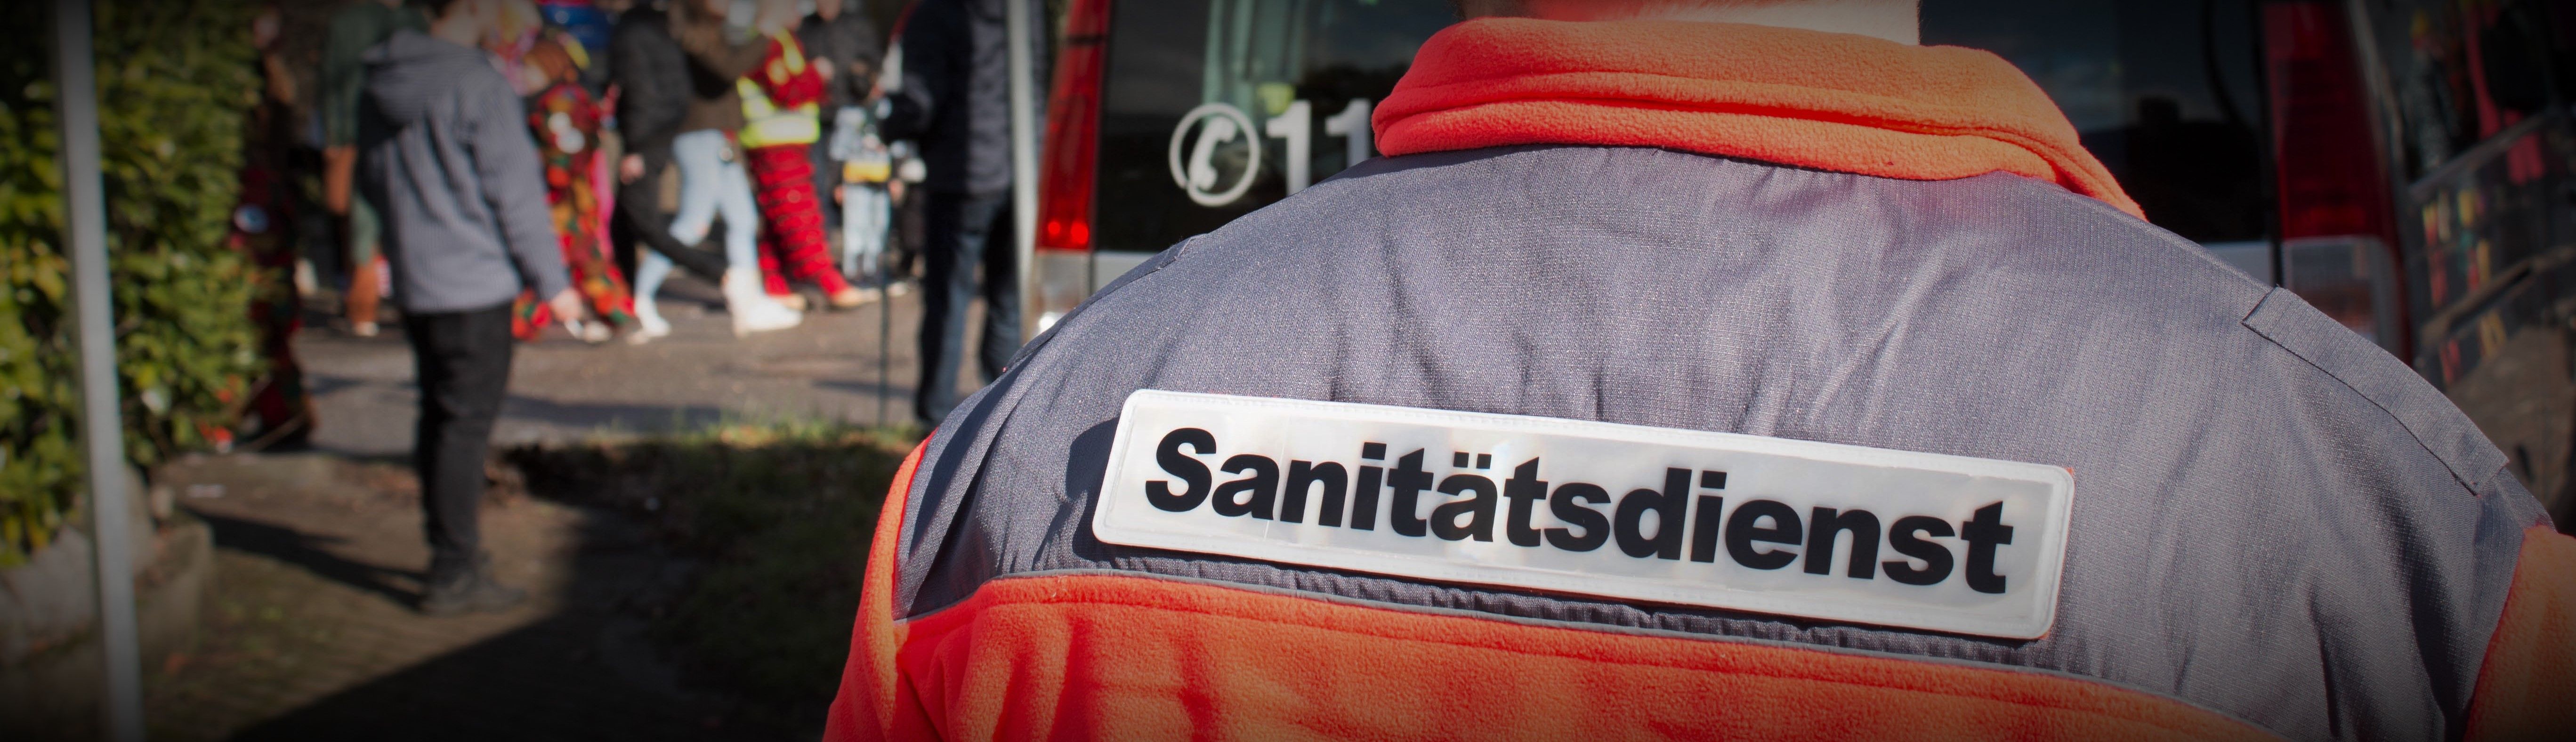 Foto: Rückenschild eines Helfers mit der Aufschrift "Sanitätsdienst"